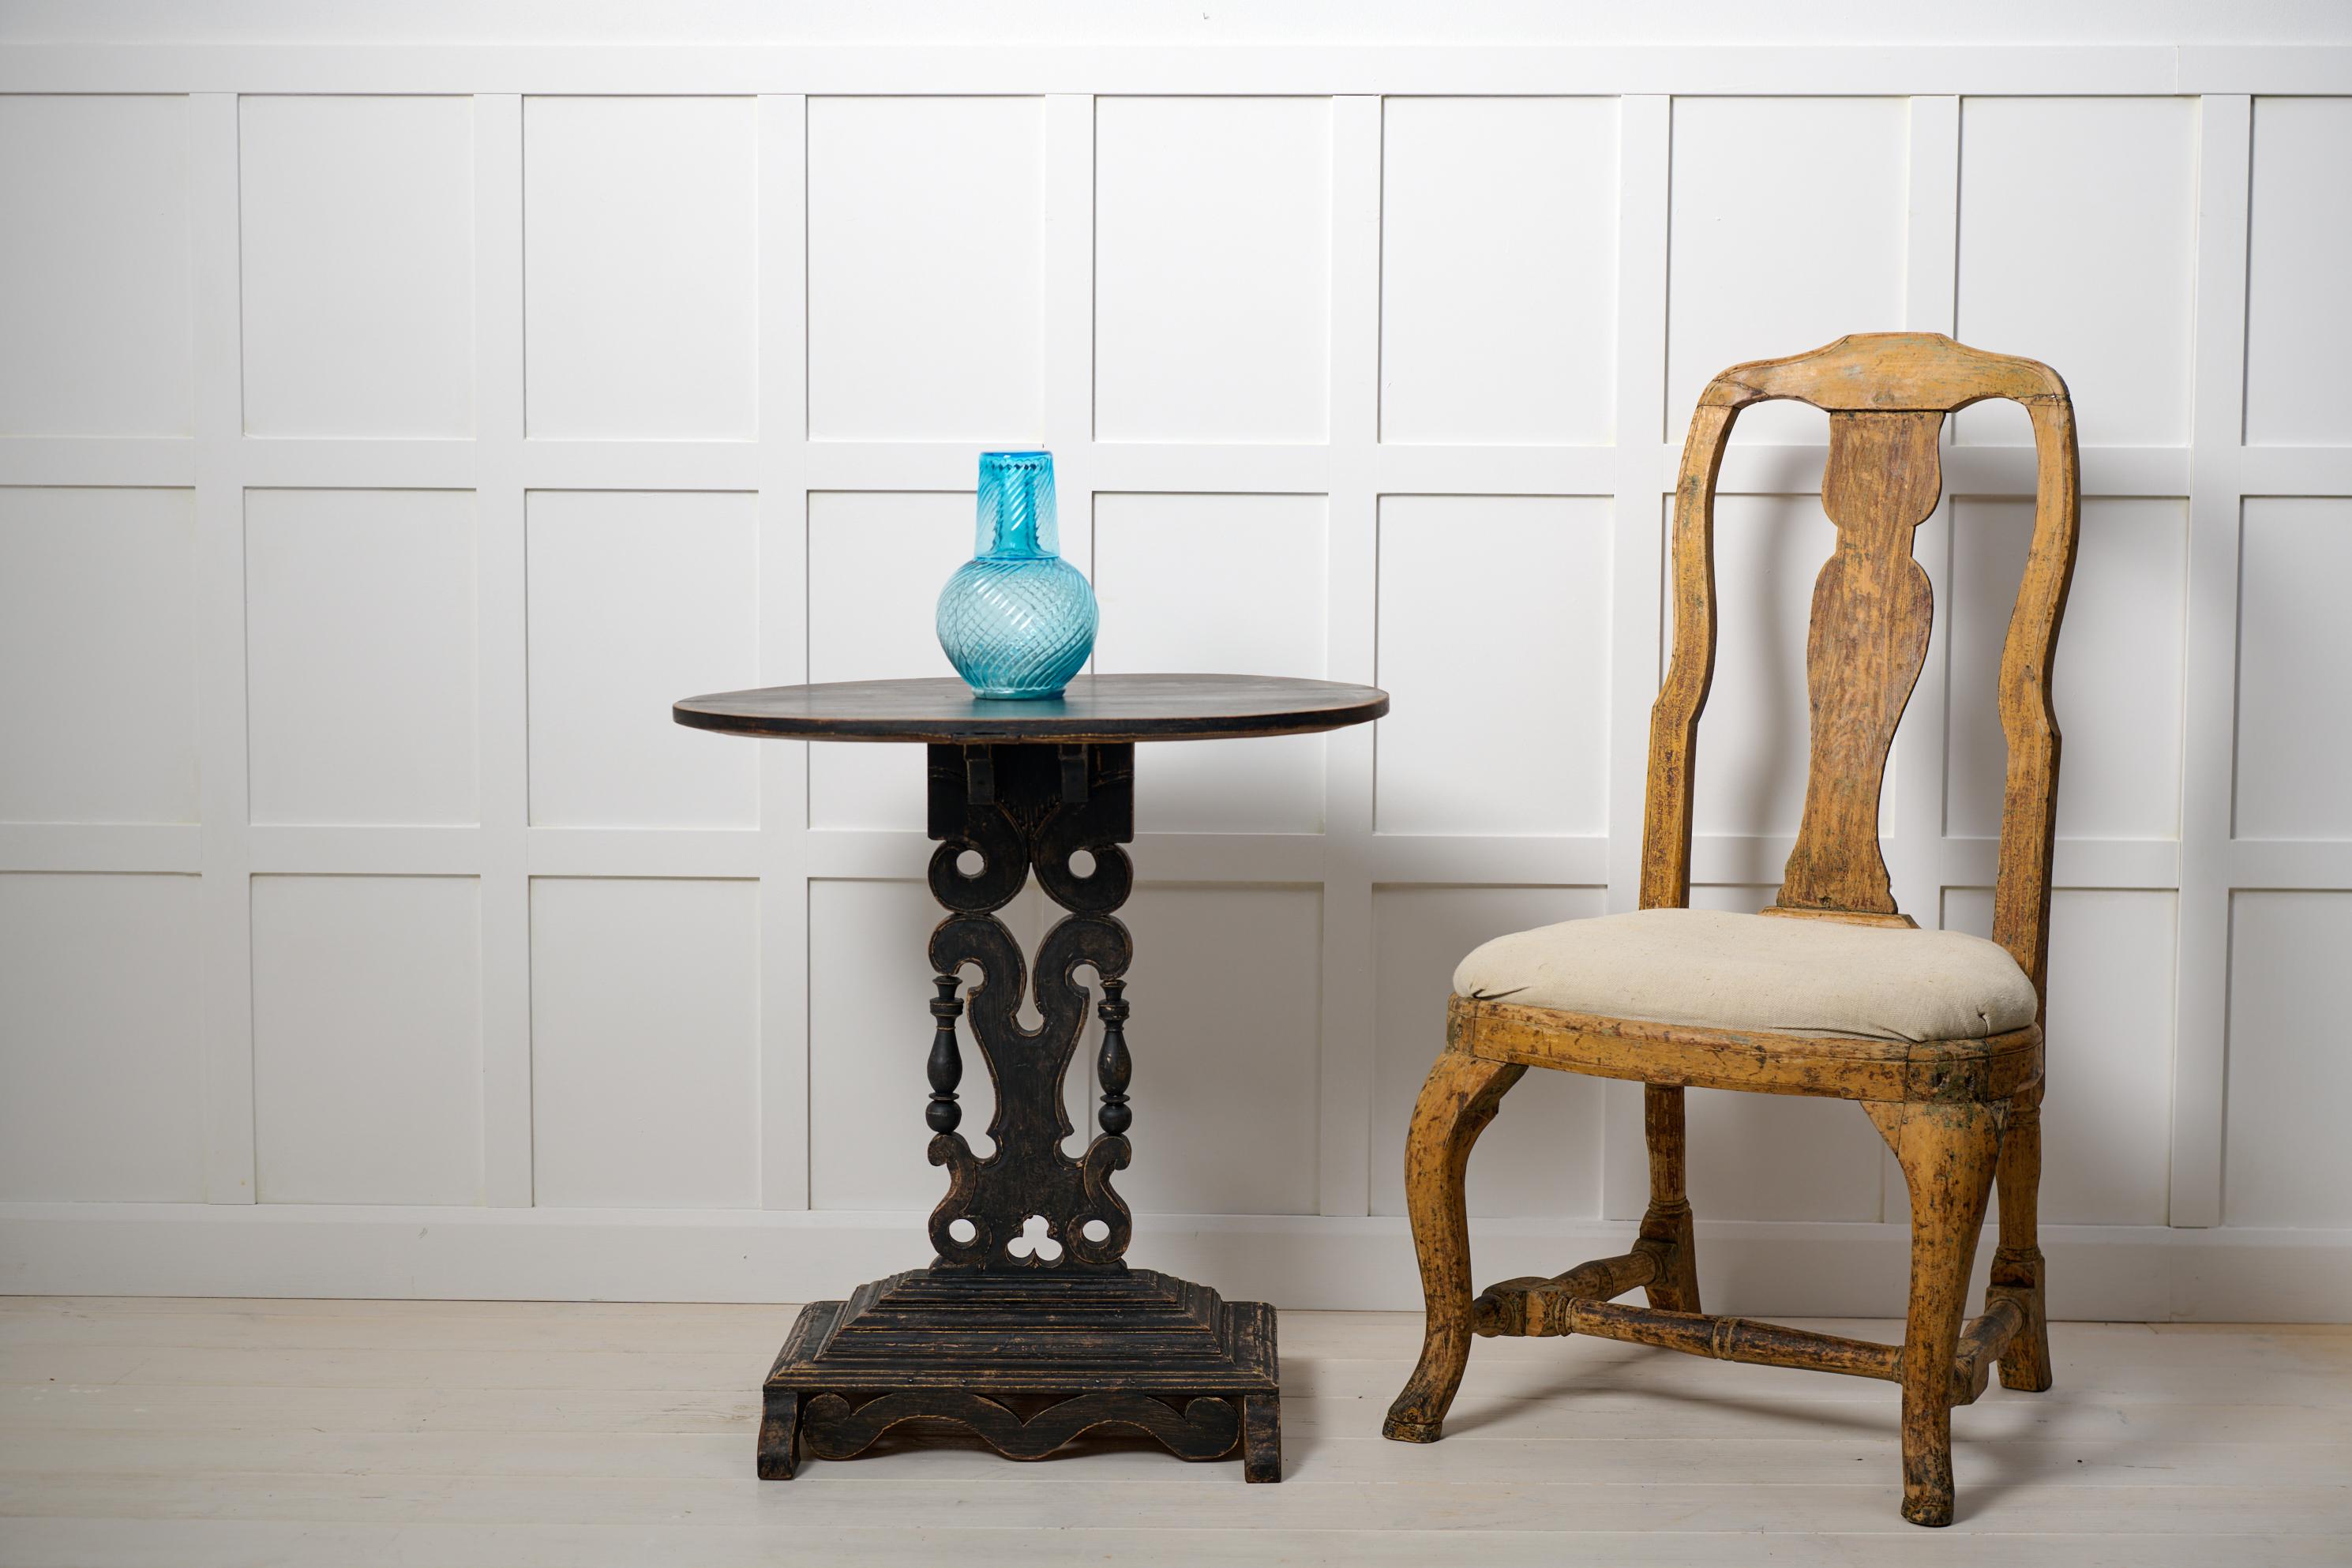 Schwedischer, antiker, verzierter Tisch mit ovaler Tischplatte aus Nordschweden, um 1880. Der Rahmen ist aus massivem Kiefernholz gefertigt und schwarz lackiert. Die Säule und der Sockel sind kunstvoll mit Schnitzereien und abgeschrägten Kanten